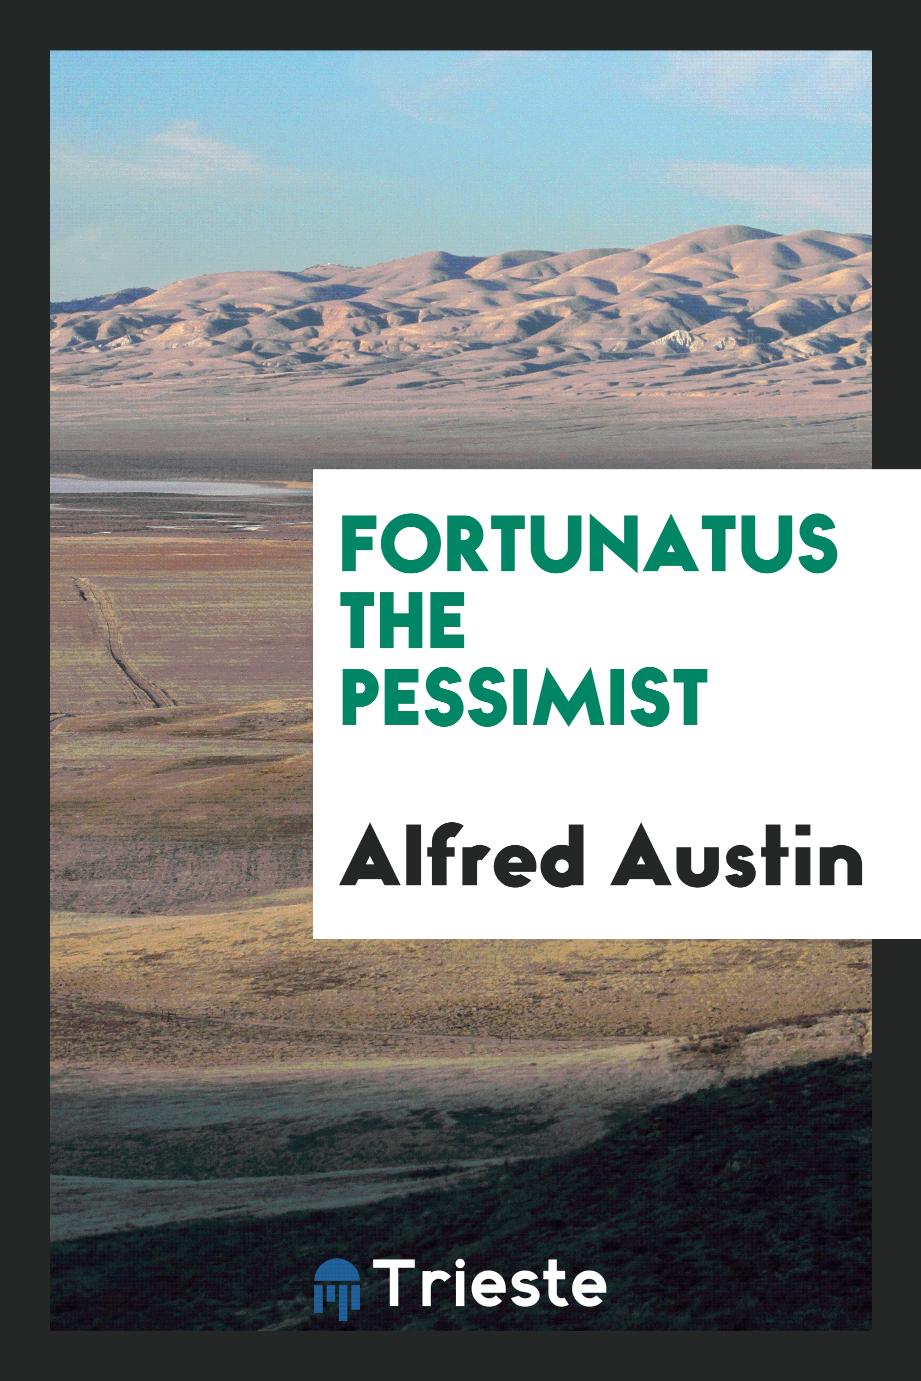 Fortunatus the pessimist